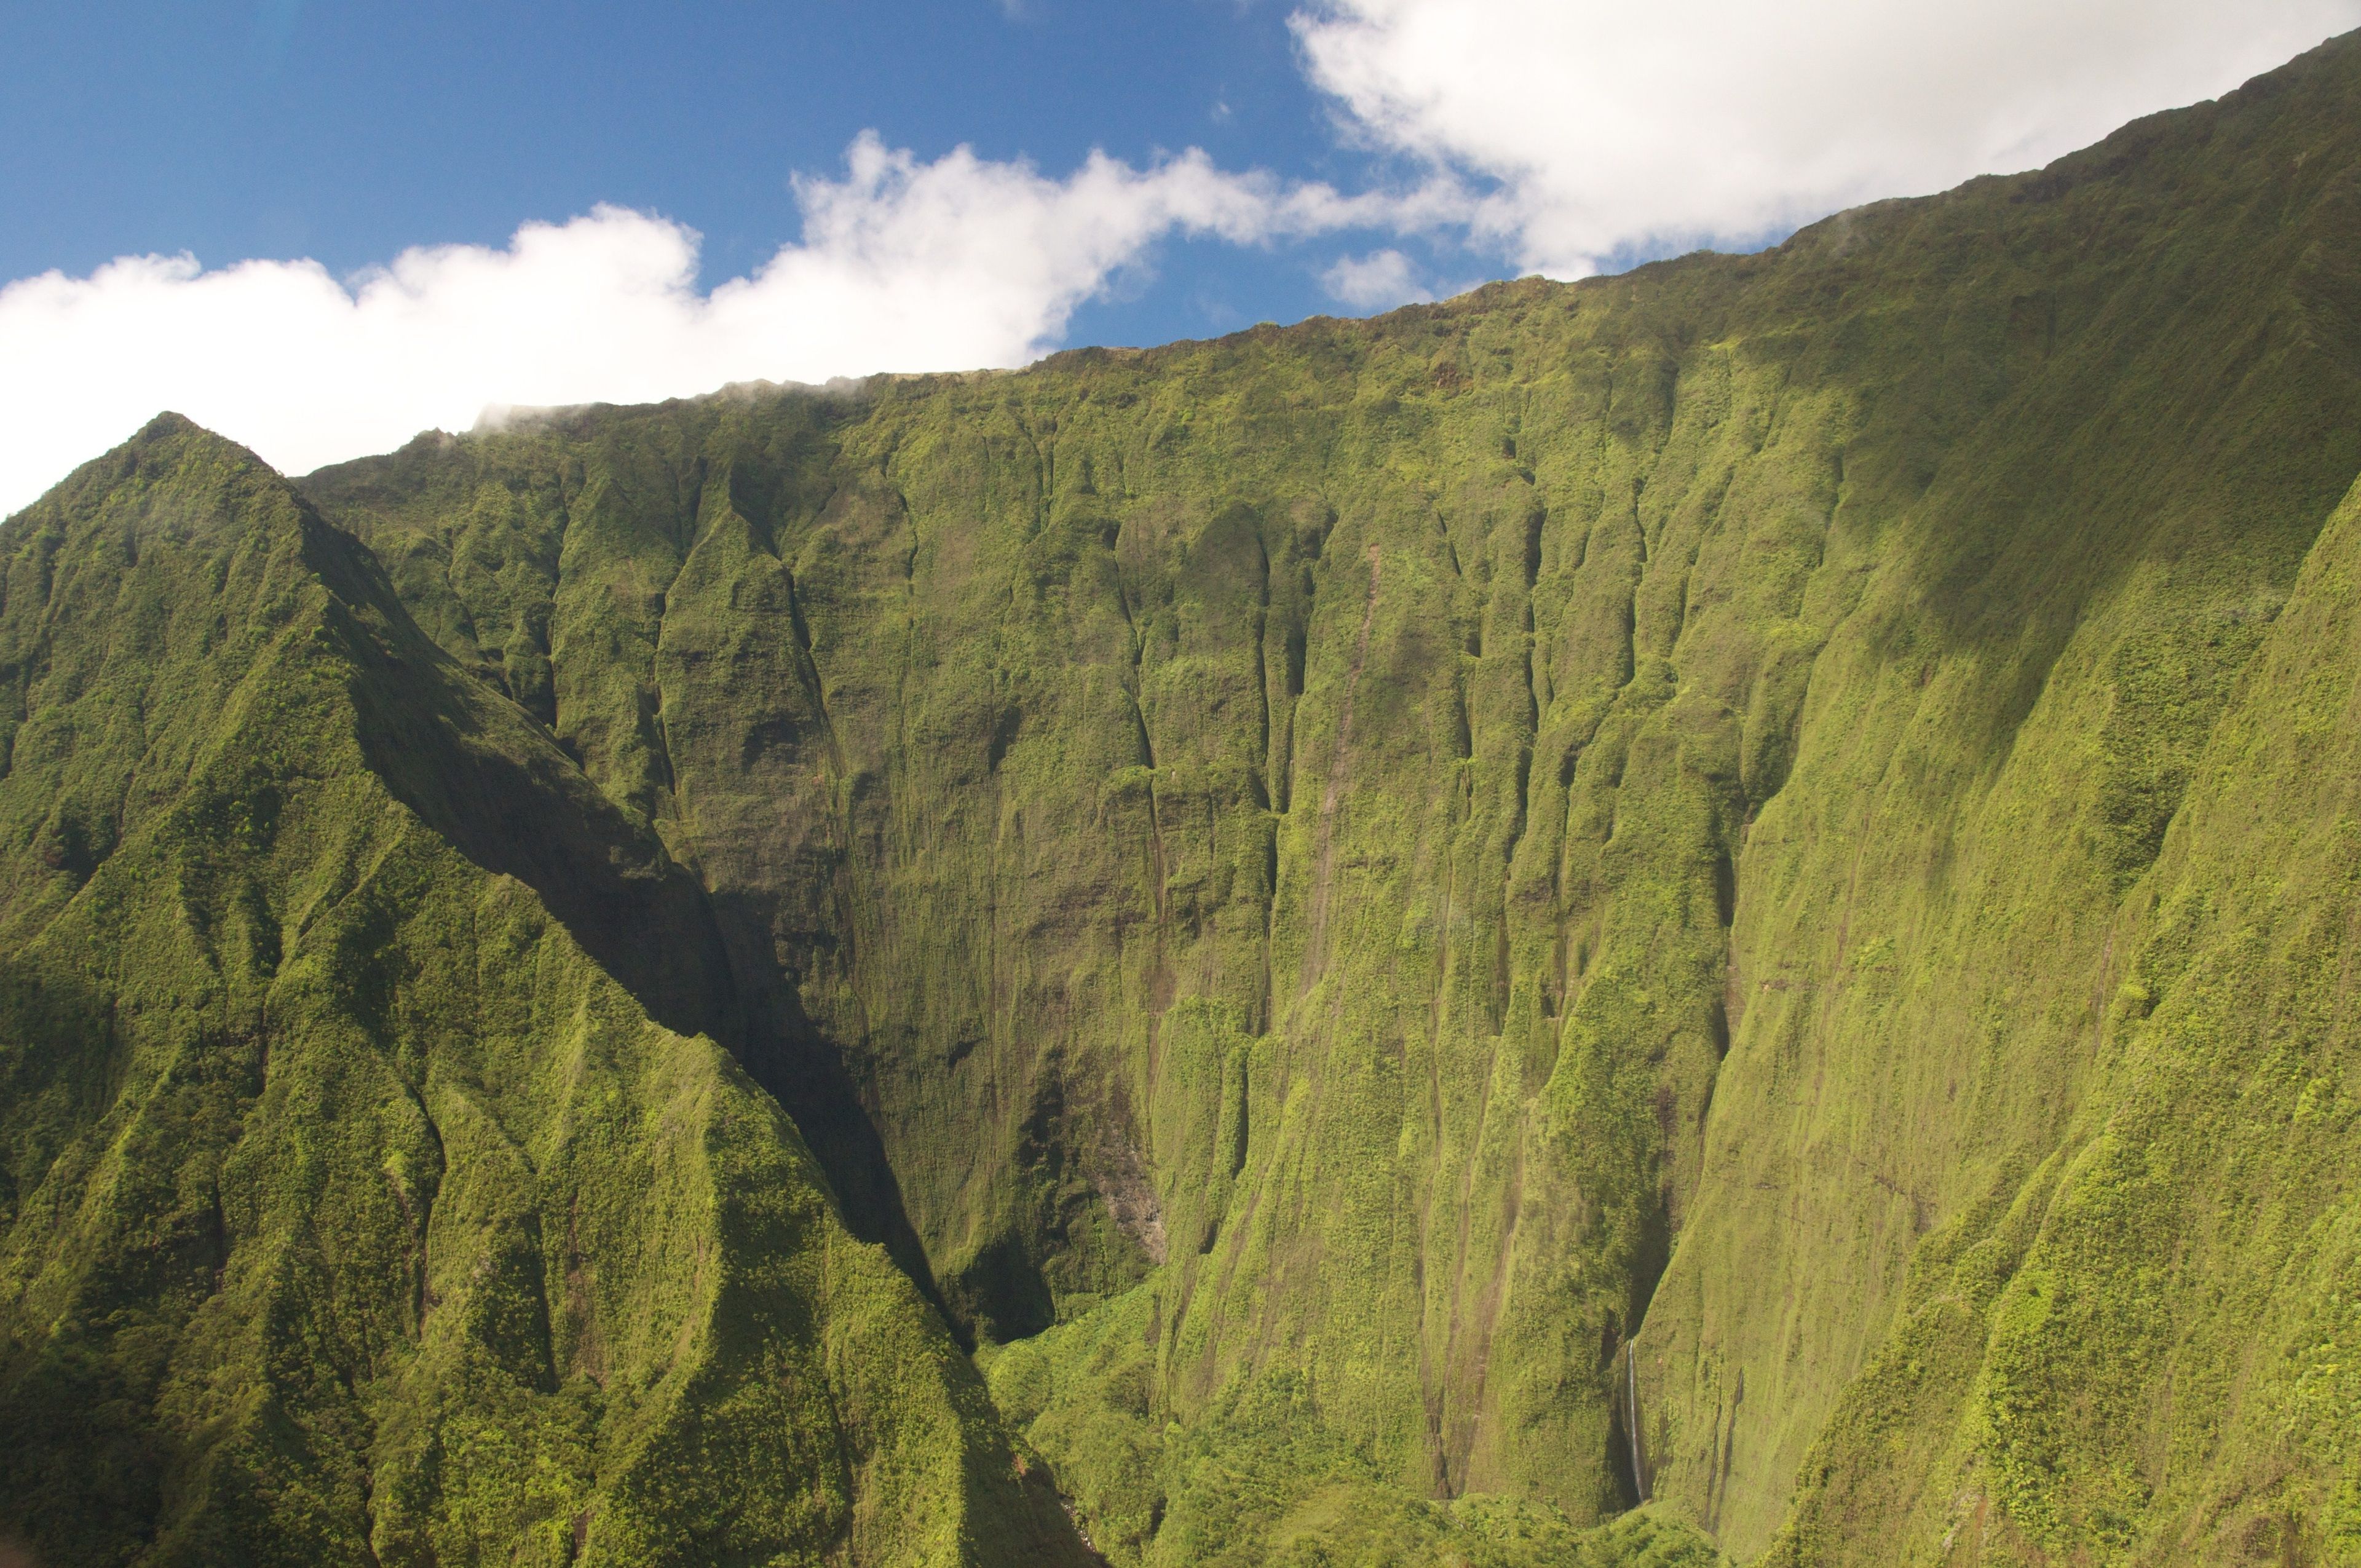 Cliffs on the island of Hawaii.